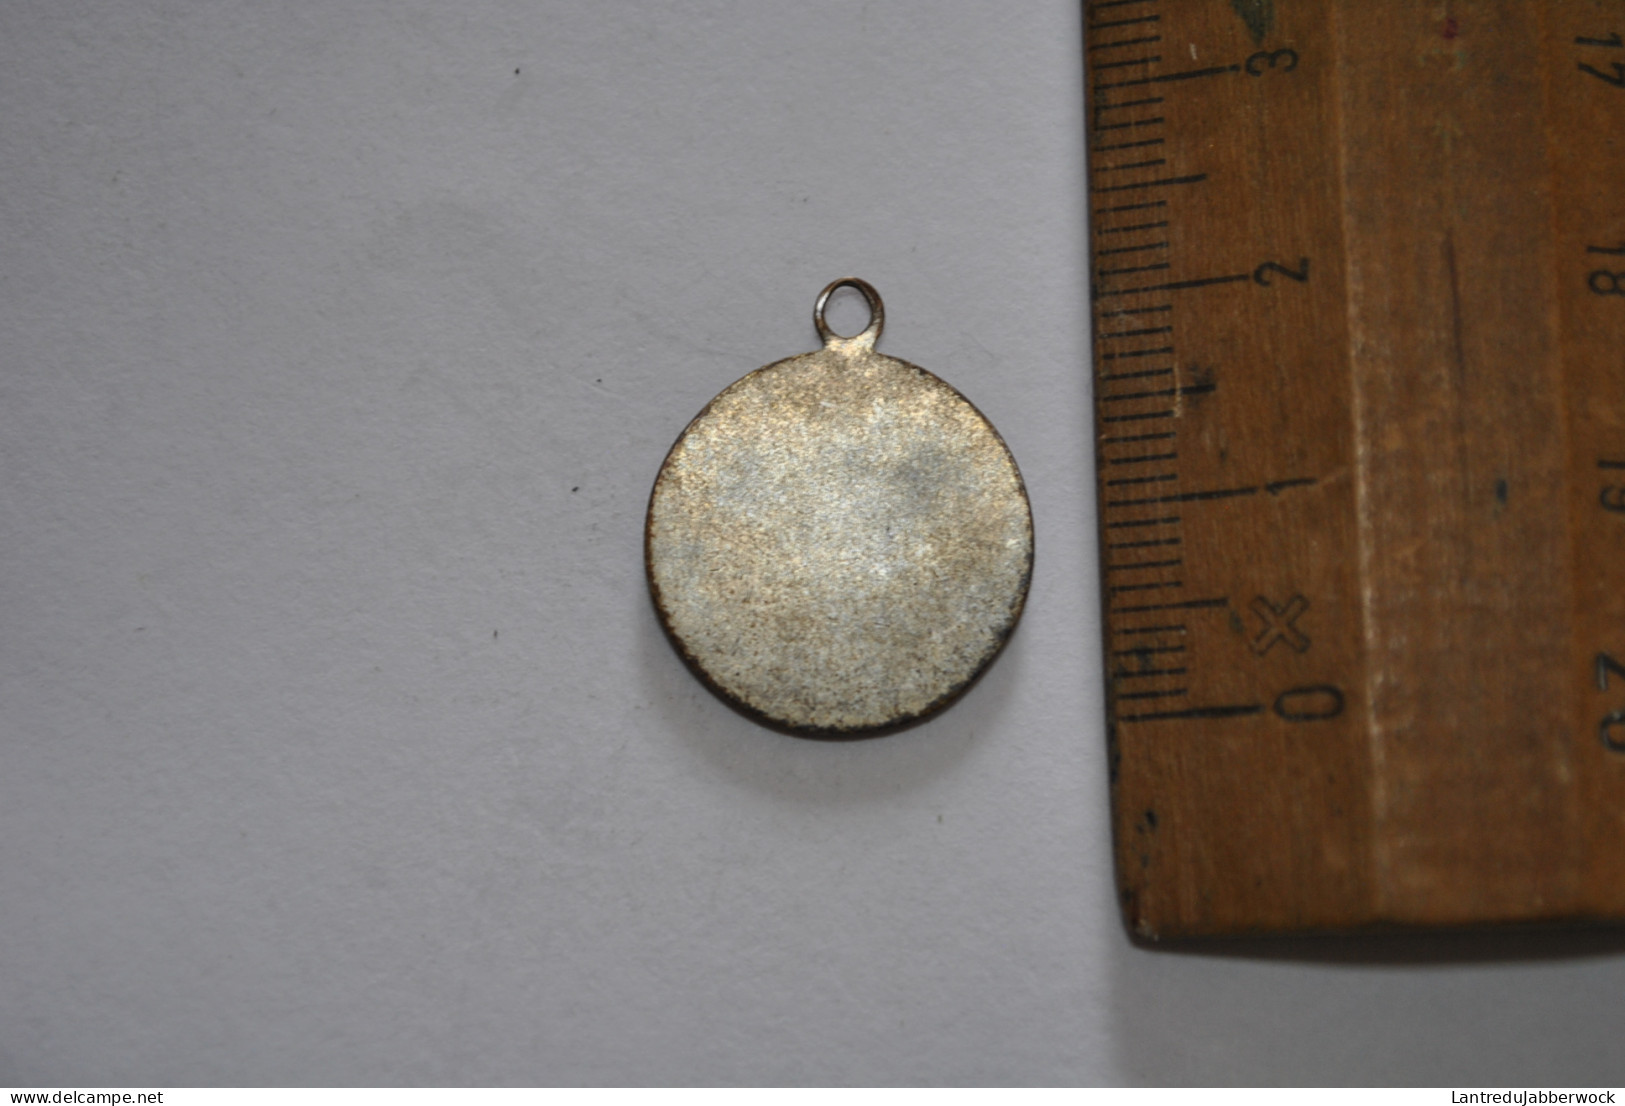 Ancienne Médaille Vierge à L'enfant Pendentif Métal Argenté Souvenir - Religion & Esotérisme